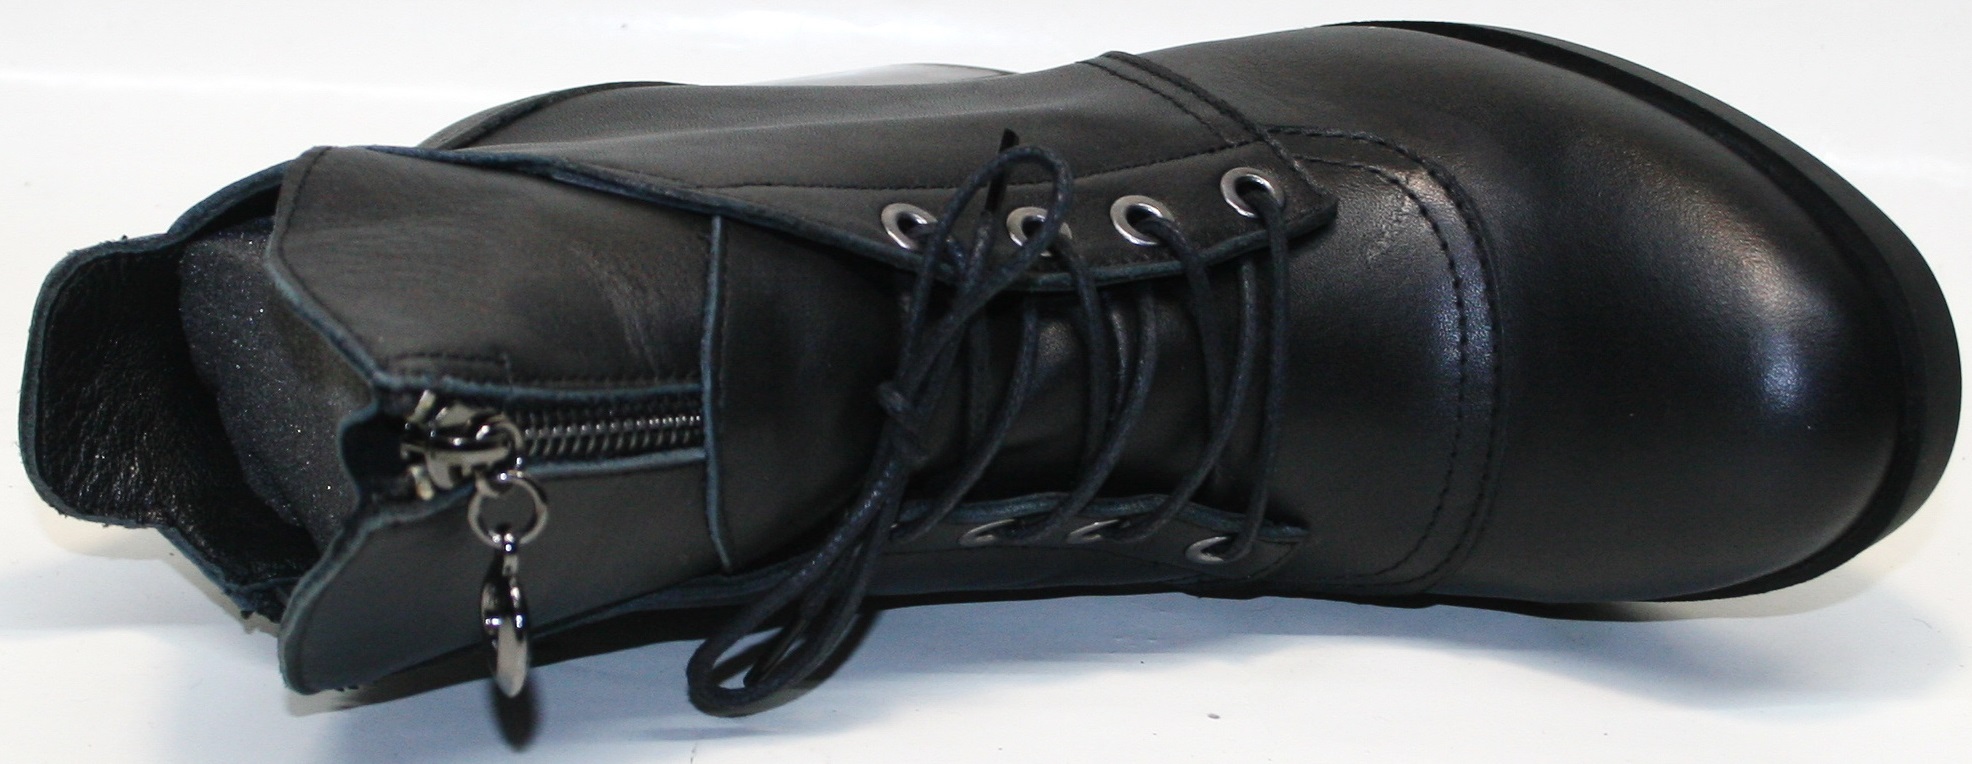  Декоративная шнуровка частично регулирует объем. На внутренней стороне "молния"